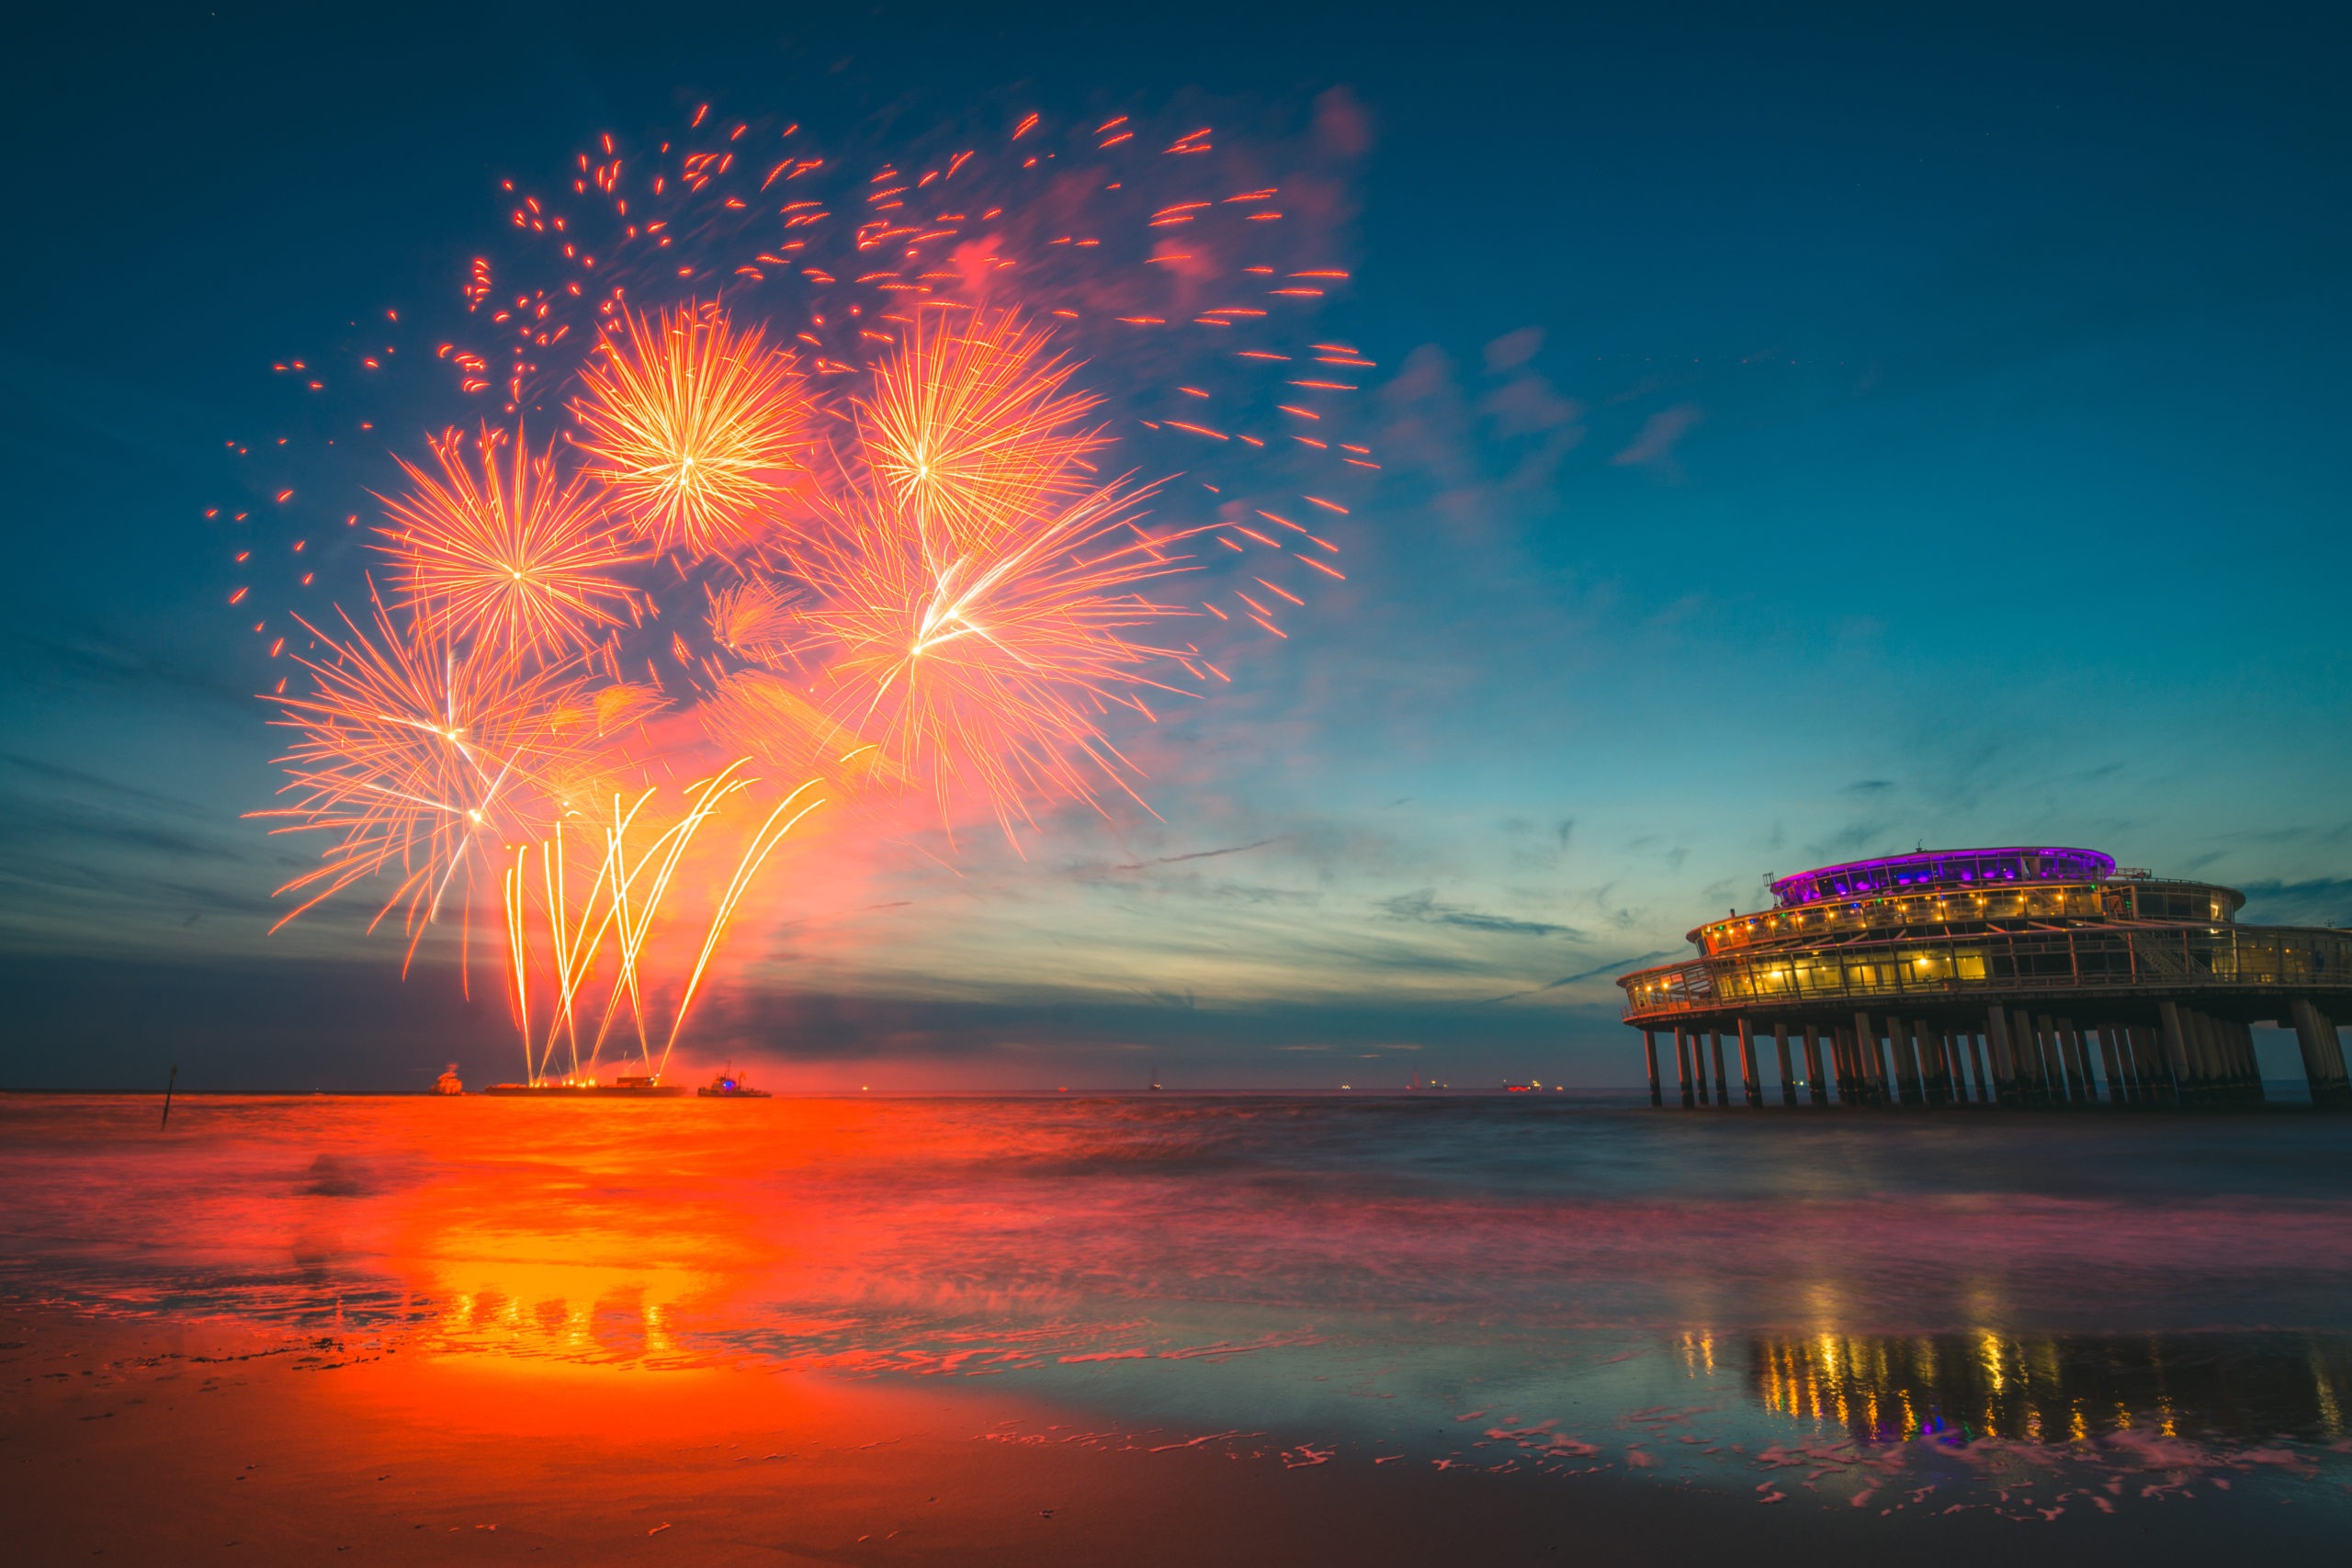 Nouvel an: pétards et feux d'artifice interdits à la plage